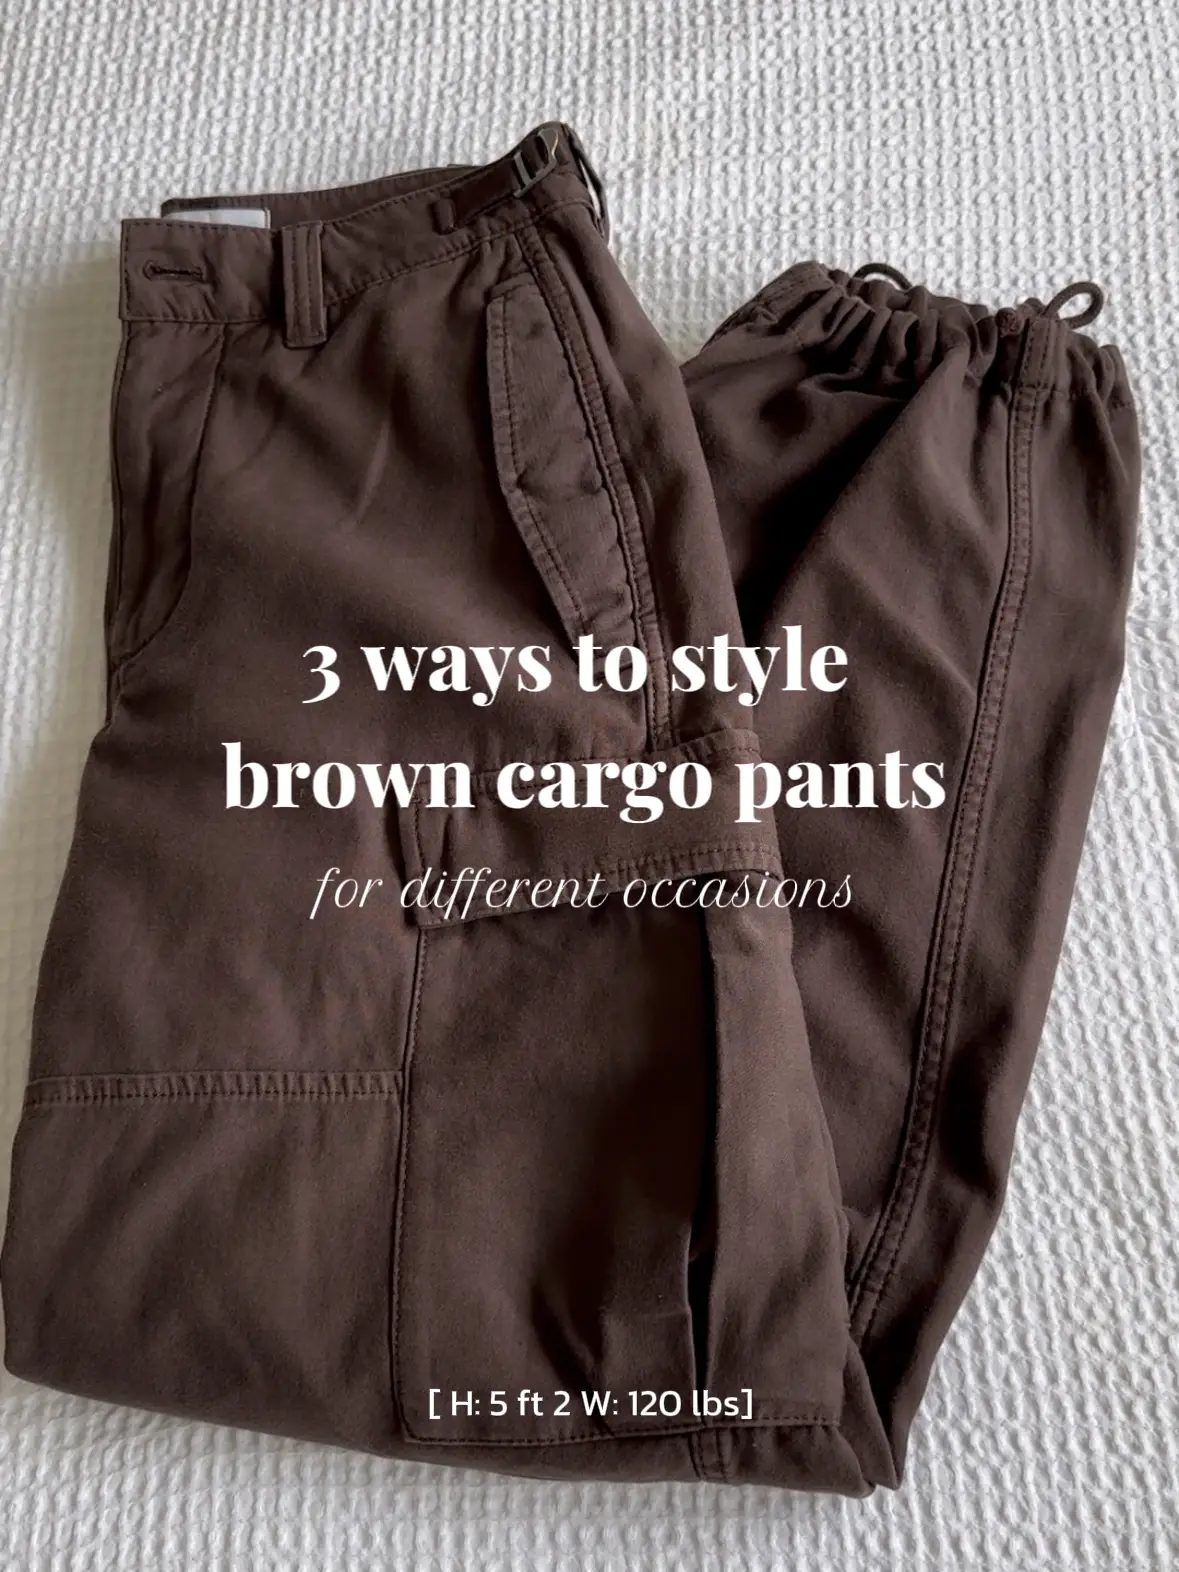 cargo pants outfit women - Lemon8 Search